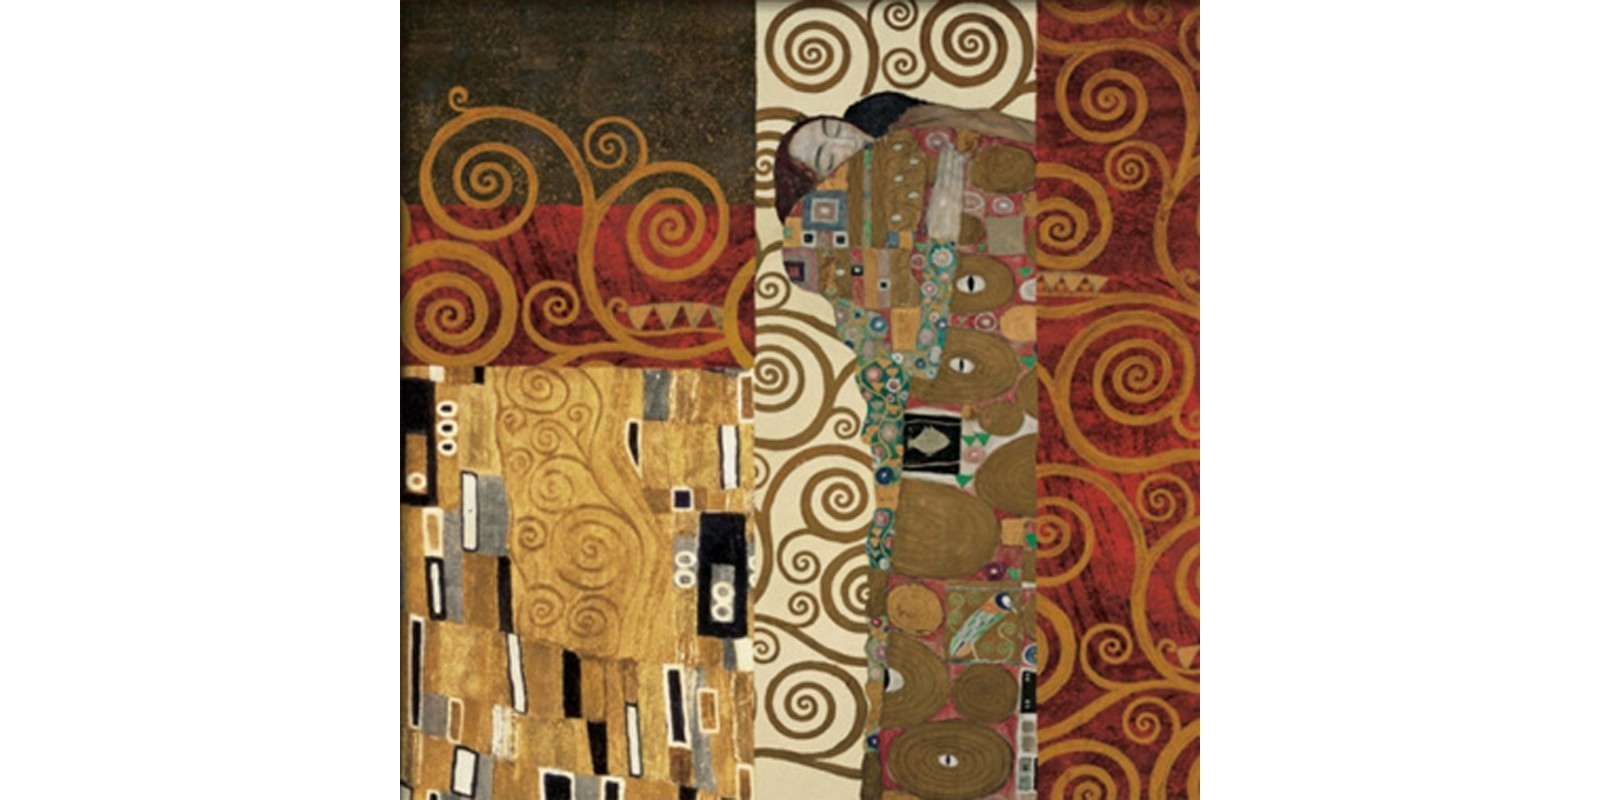 Gustav Klimt - Klimt Details (Fulfillment)